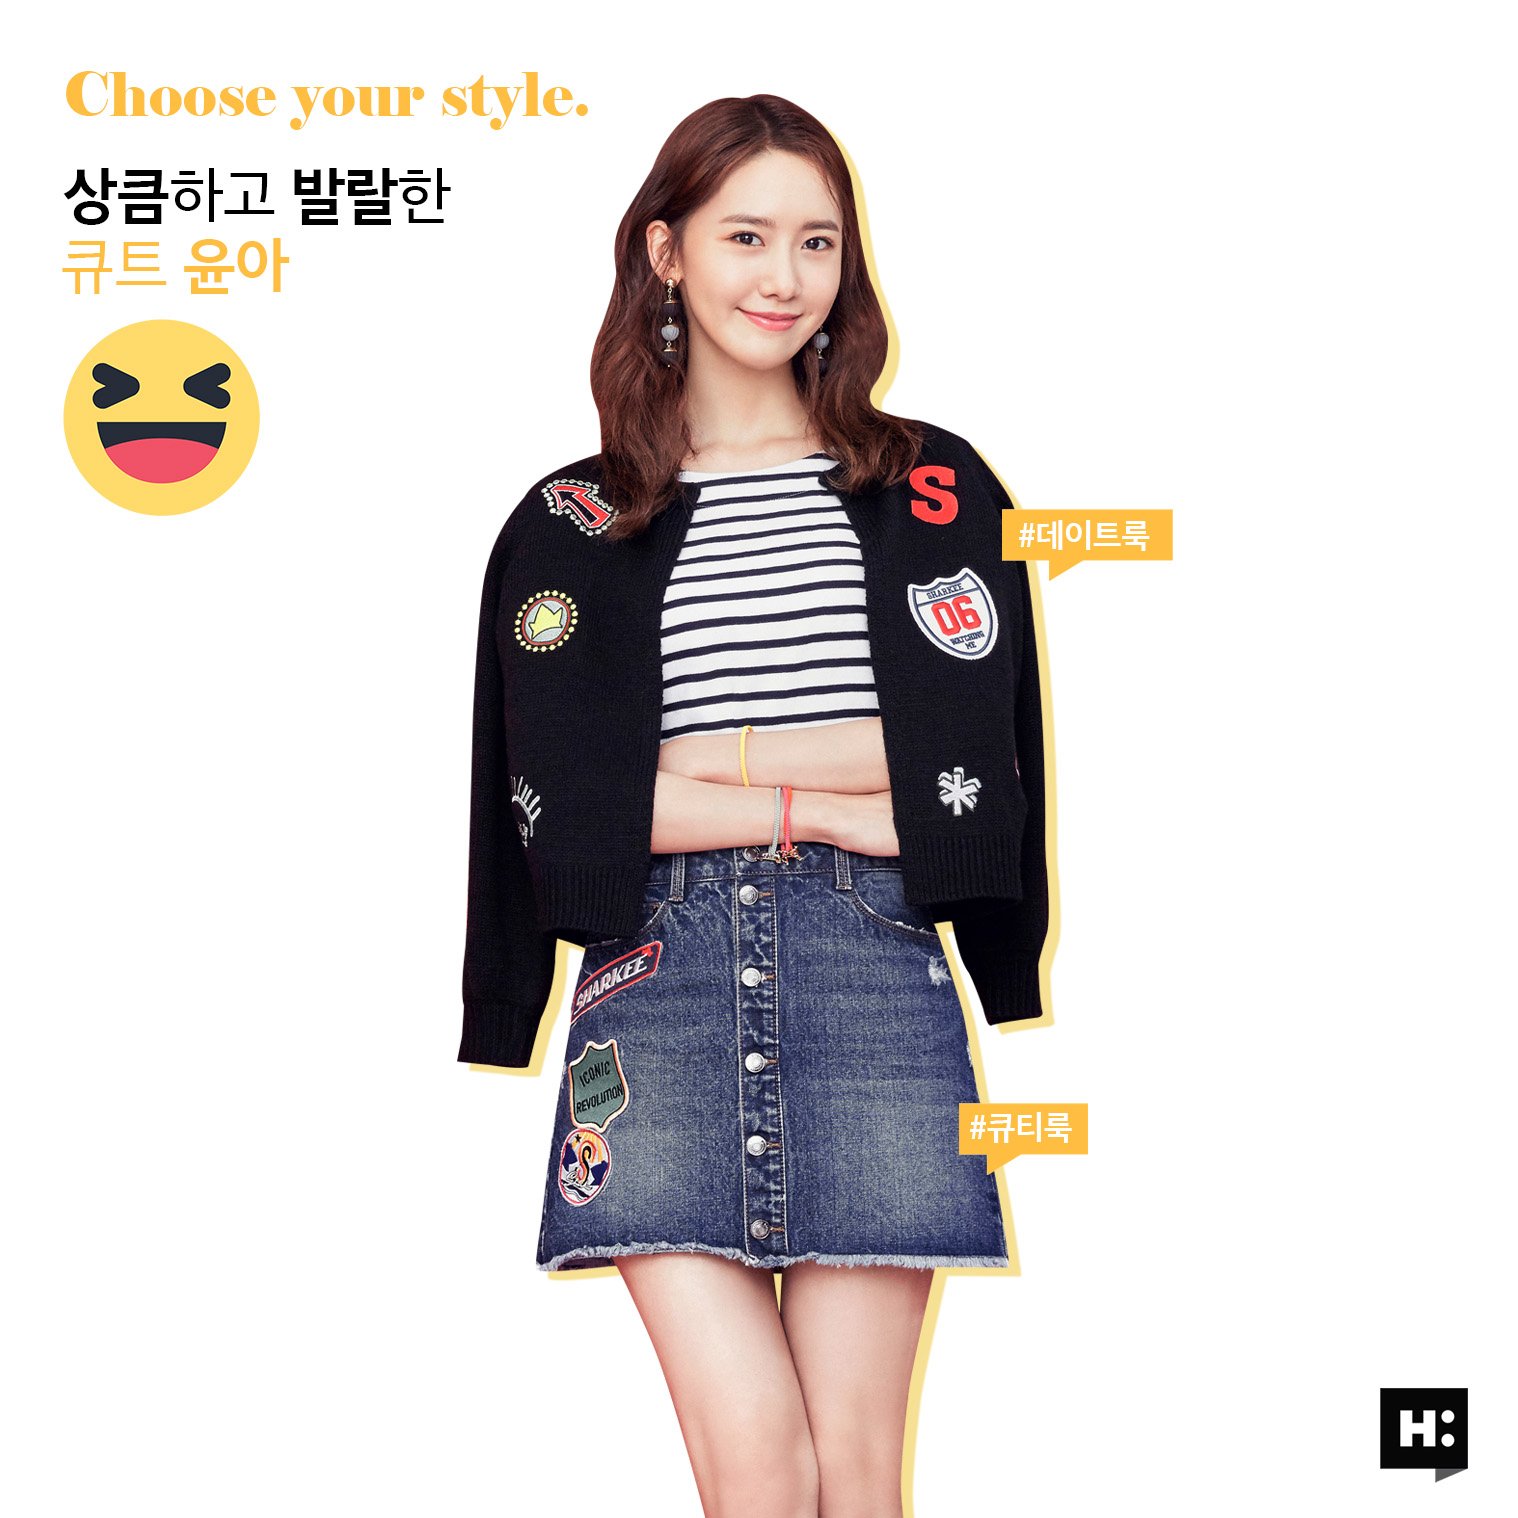 [OTHER][27-07-2015]YoonA trở thành người mẫu mới cho dòng thời trang "H:CONNECT" - Page 7 3BGwDa3kOQ-3000x3000